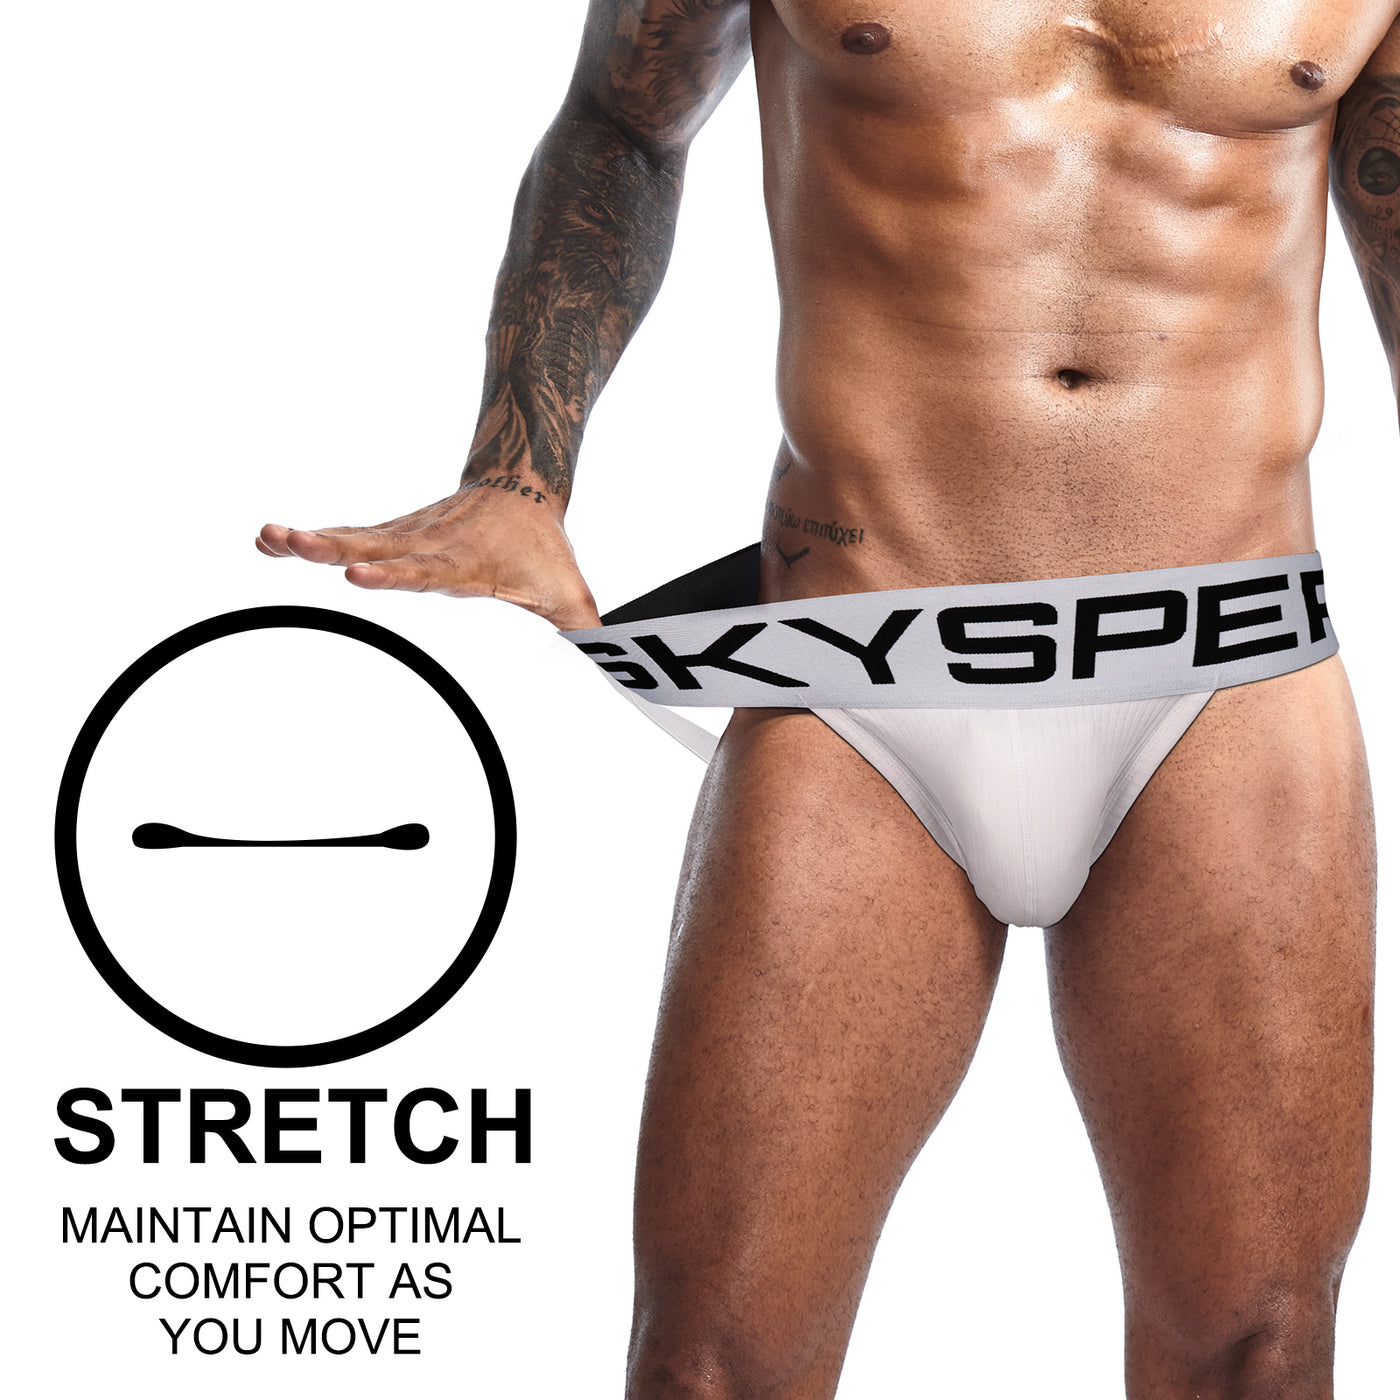 AQ06 - SKYSPER Men's Jockstrap Underwear Athletic Supporter